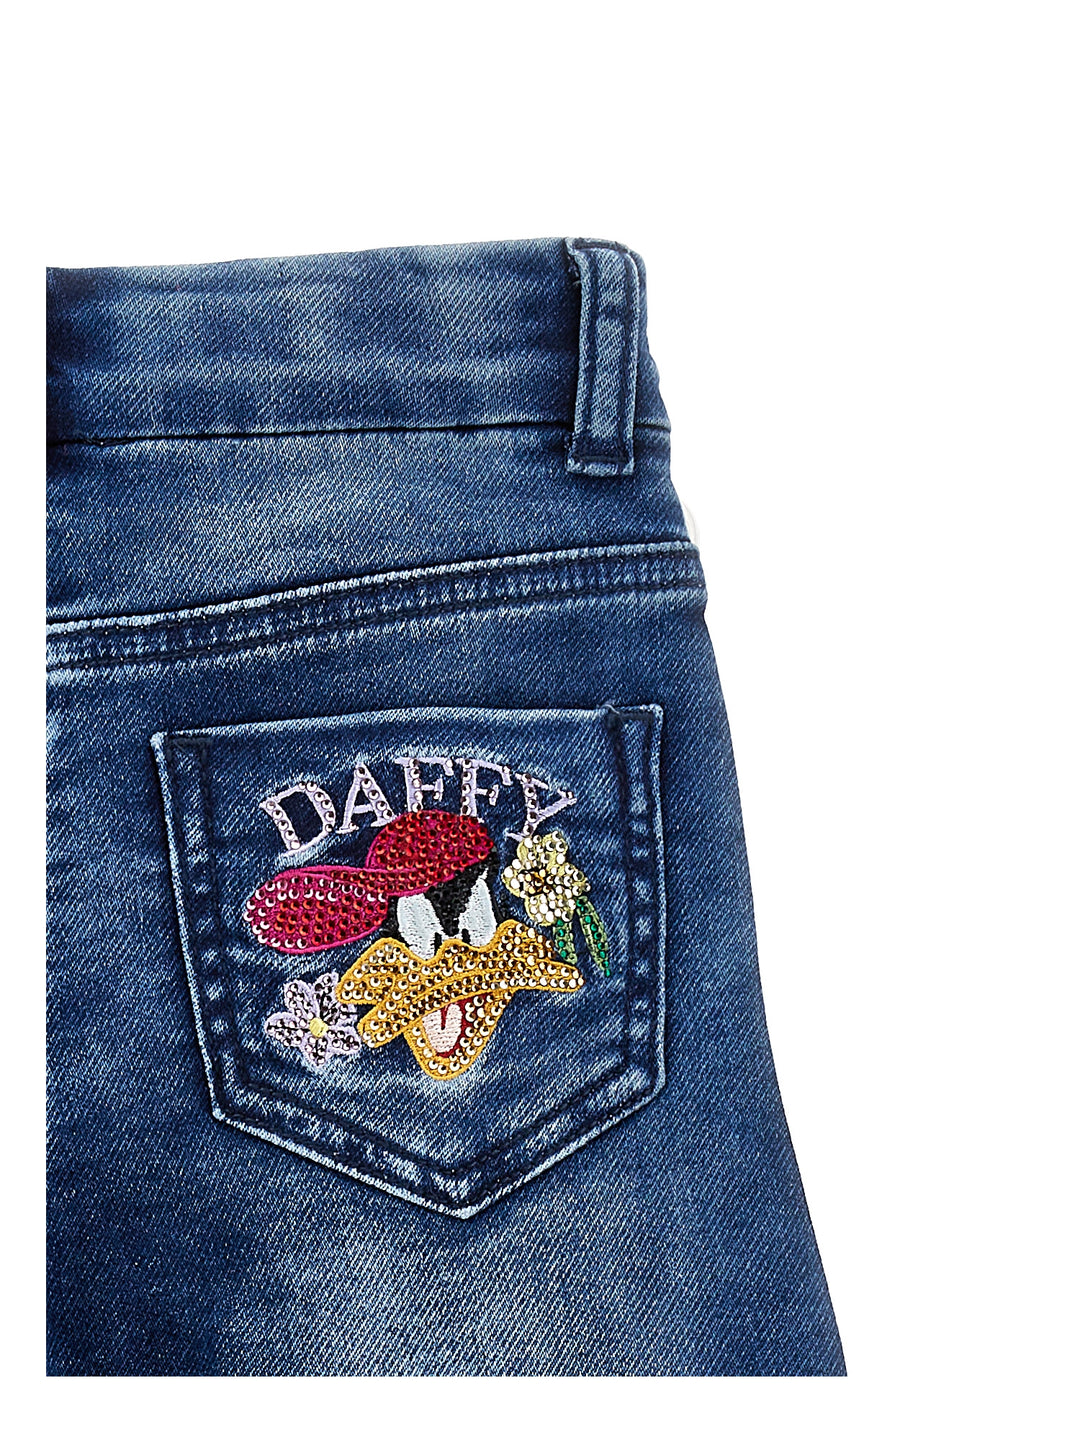 Jeans denim bambina con stampa 'Duffy Duck' posteriore